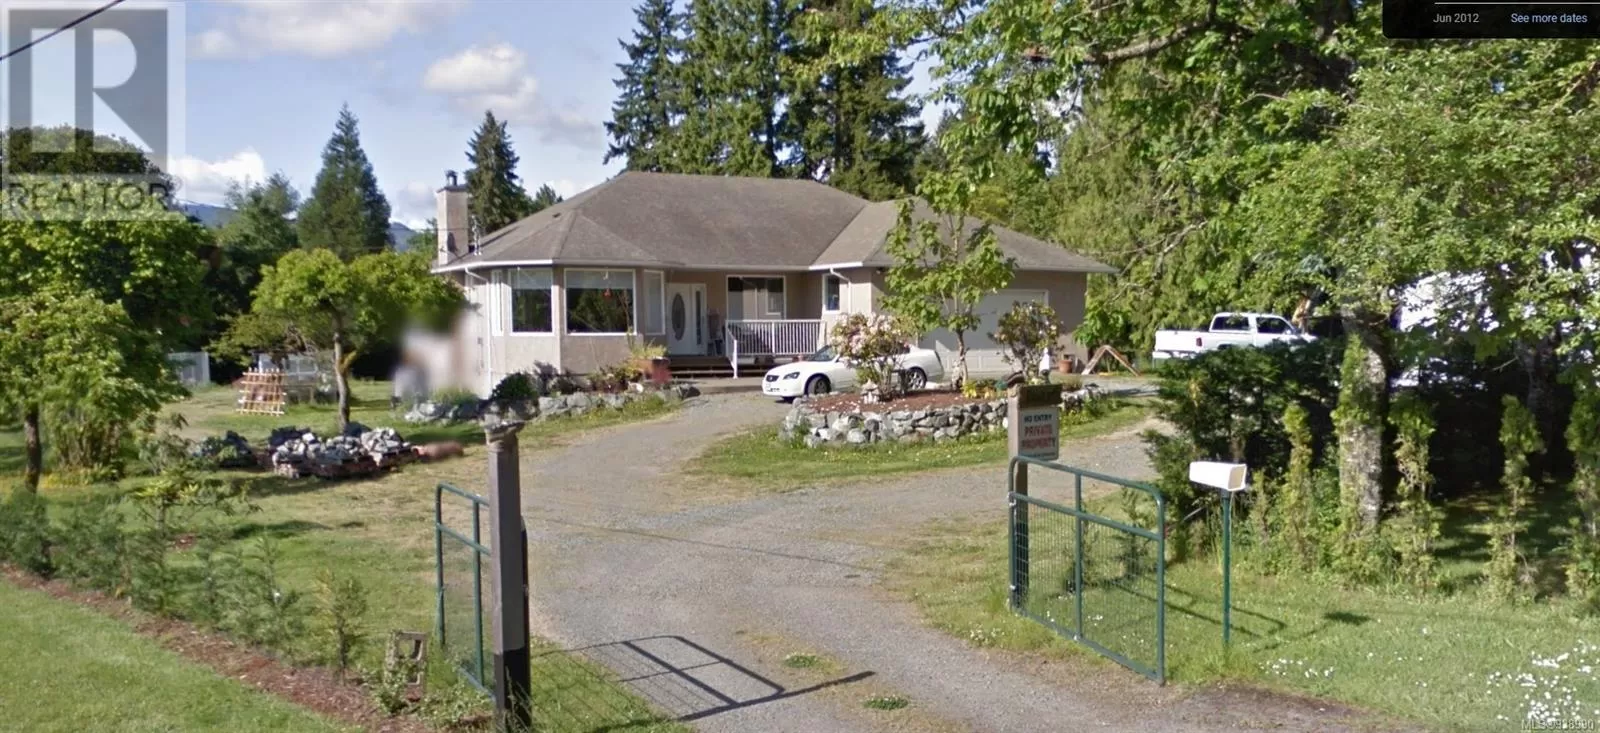 House for rent: 4100 Crosland Pl, Duncan, British Columbia V9L 6C7